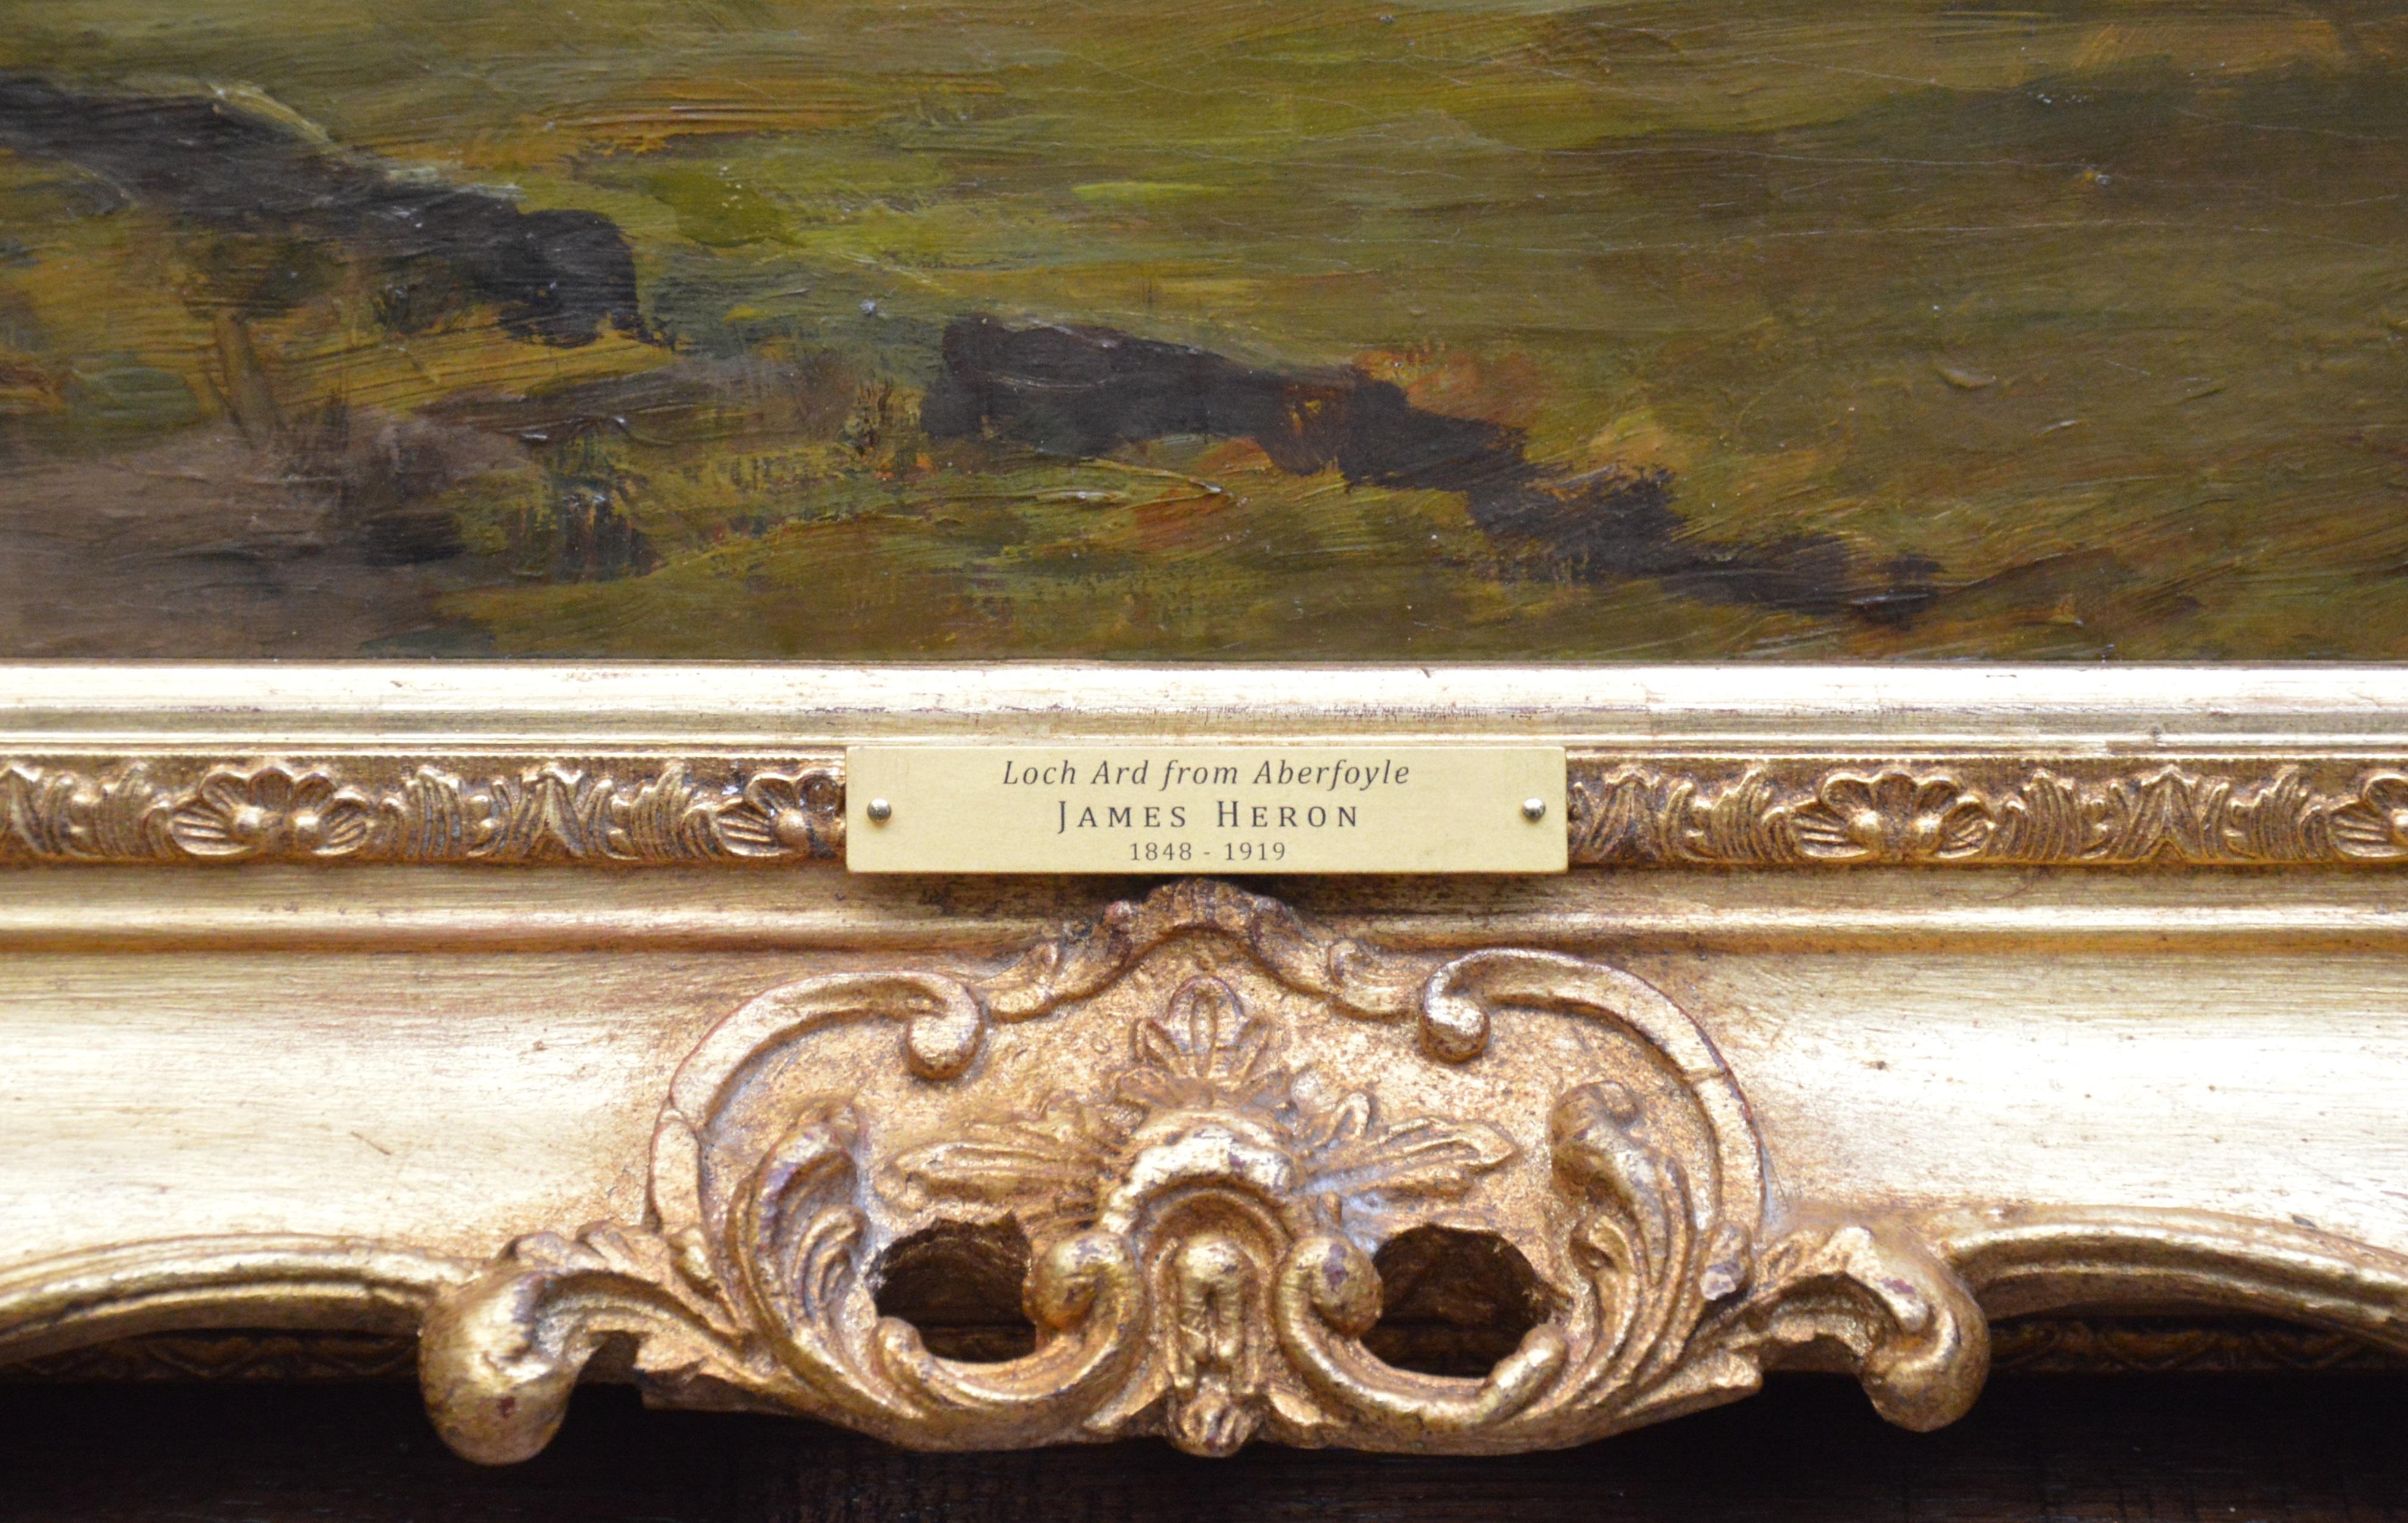 Loch Ard from Aberfoyle - Paysage écossais du 19ème siècle - Peinture à l'huile 4